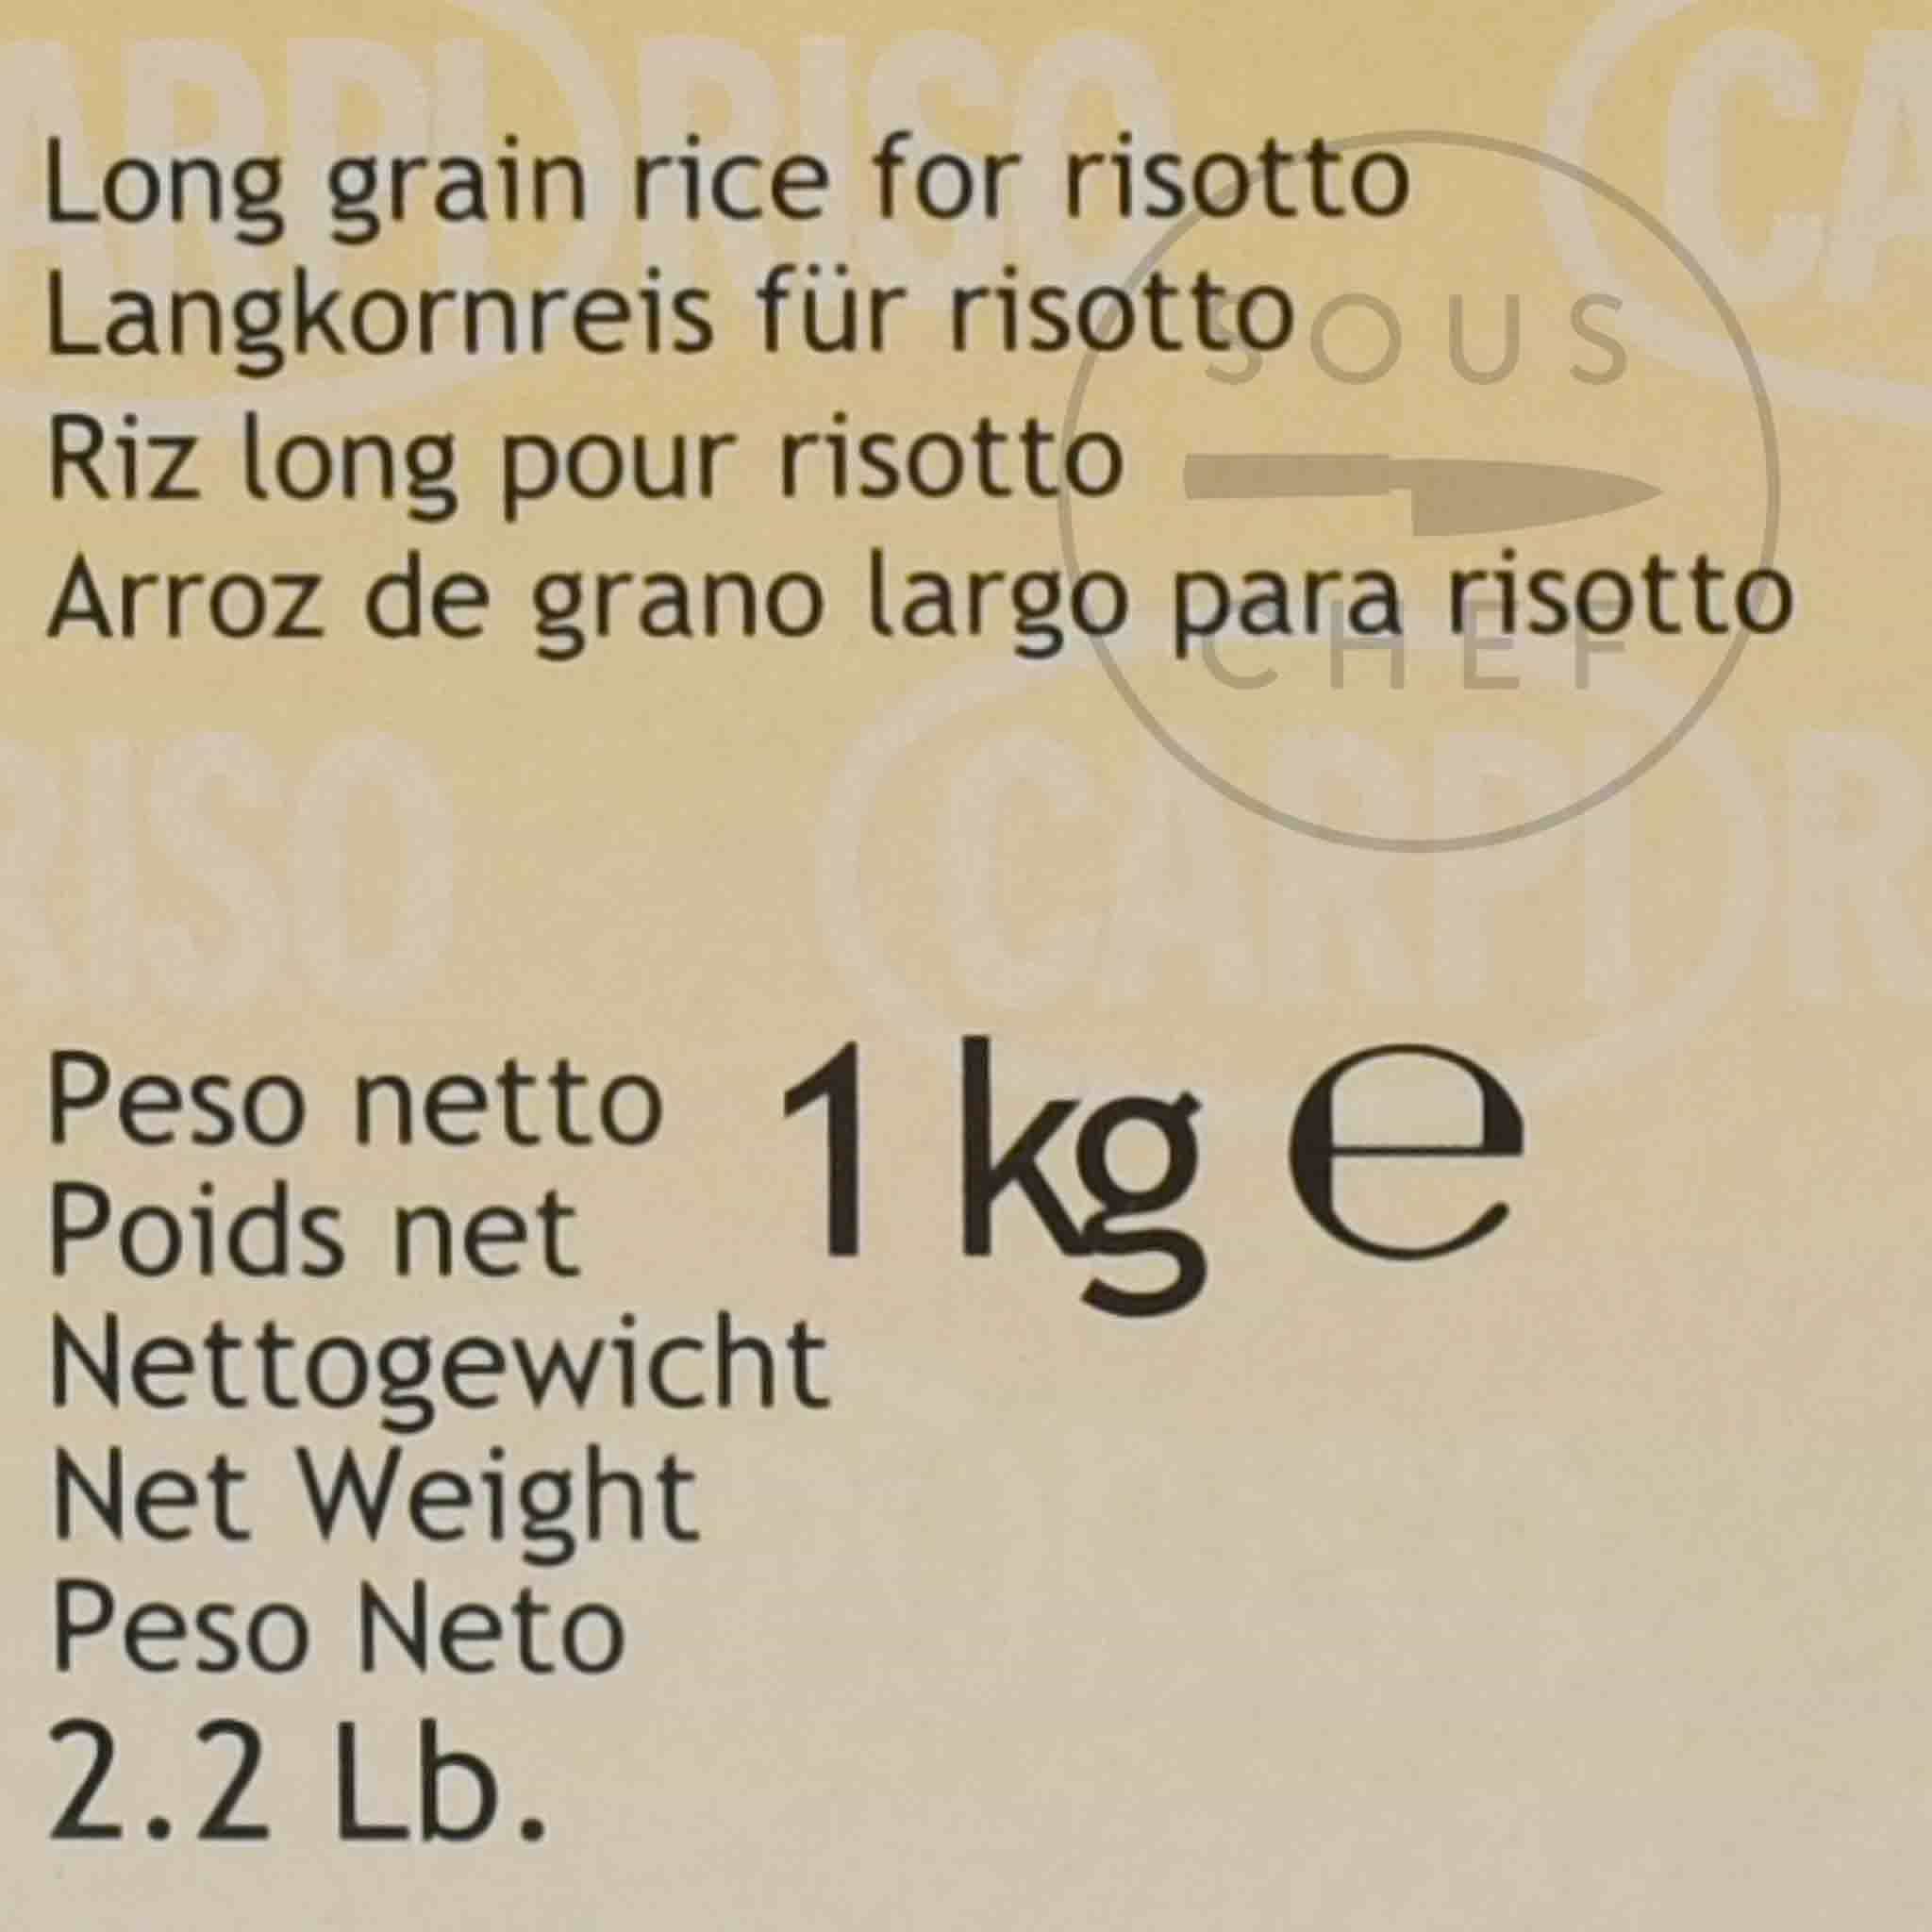 Carpi Arborio Risotto Rice, 1kg